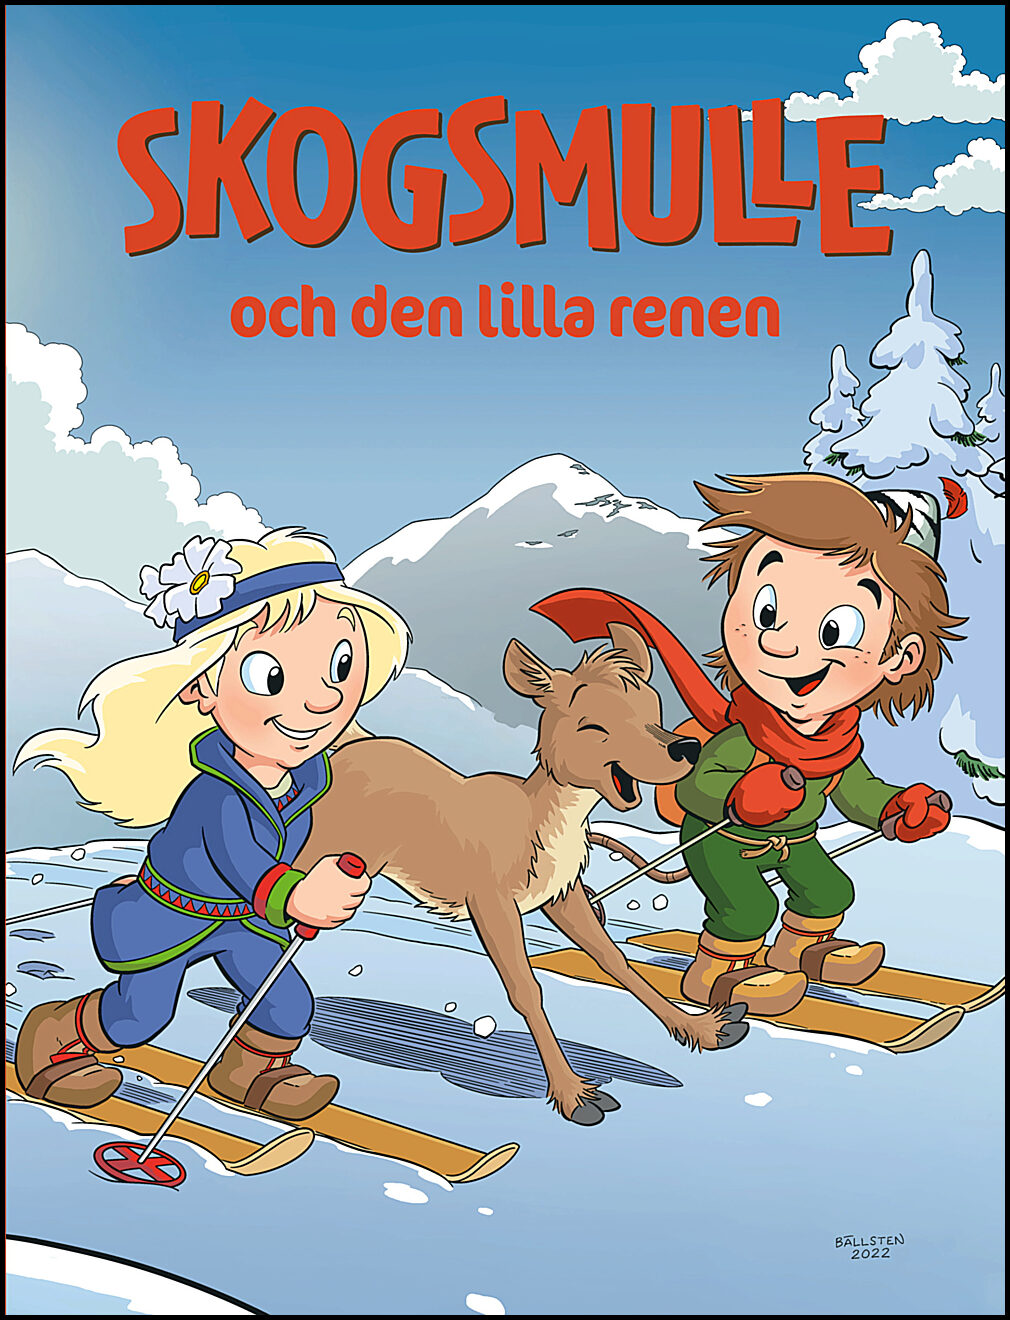 Adolfsson, Susanne | Skogsmulle och den lilla renen